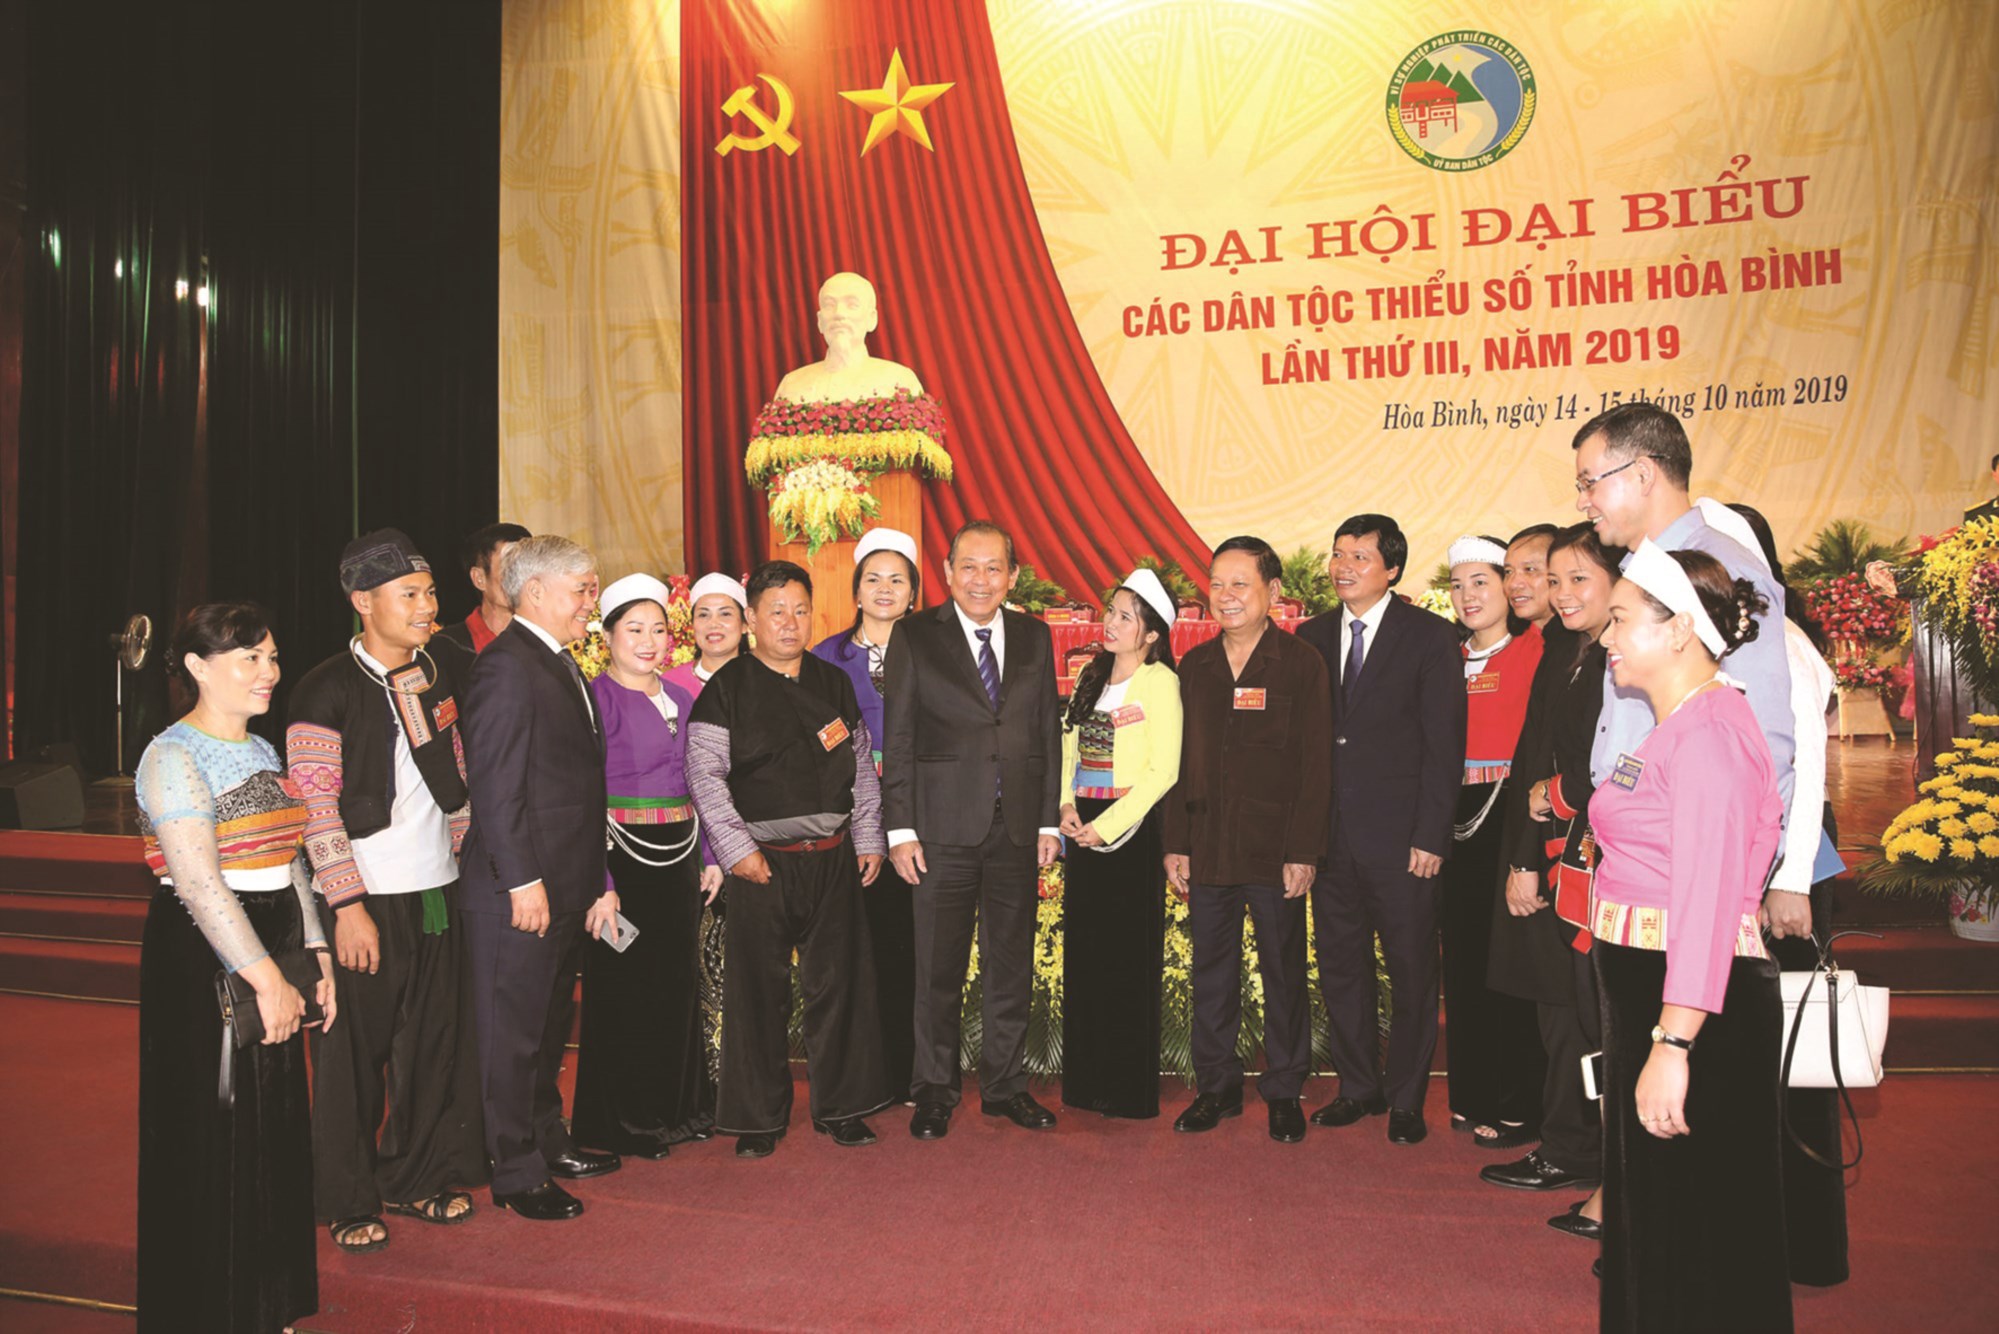 Phó Thủ tướng Thường trực Chính phủ Trương Hòa Bình và Bộ trưởng, Chủ nhiệm Ủy ban Dân tộc Đỗ Văn Chiến trò chuyện cùng đại biểu tham dự Đại hội Đại biểu các DTTS tỉnh Hòa Bình lần thứ III, năm 2019.